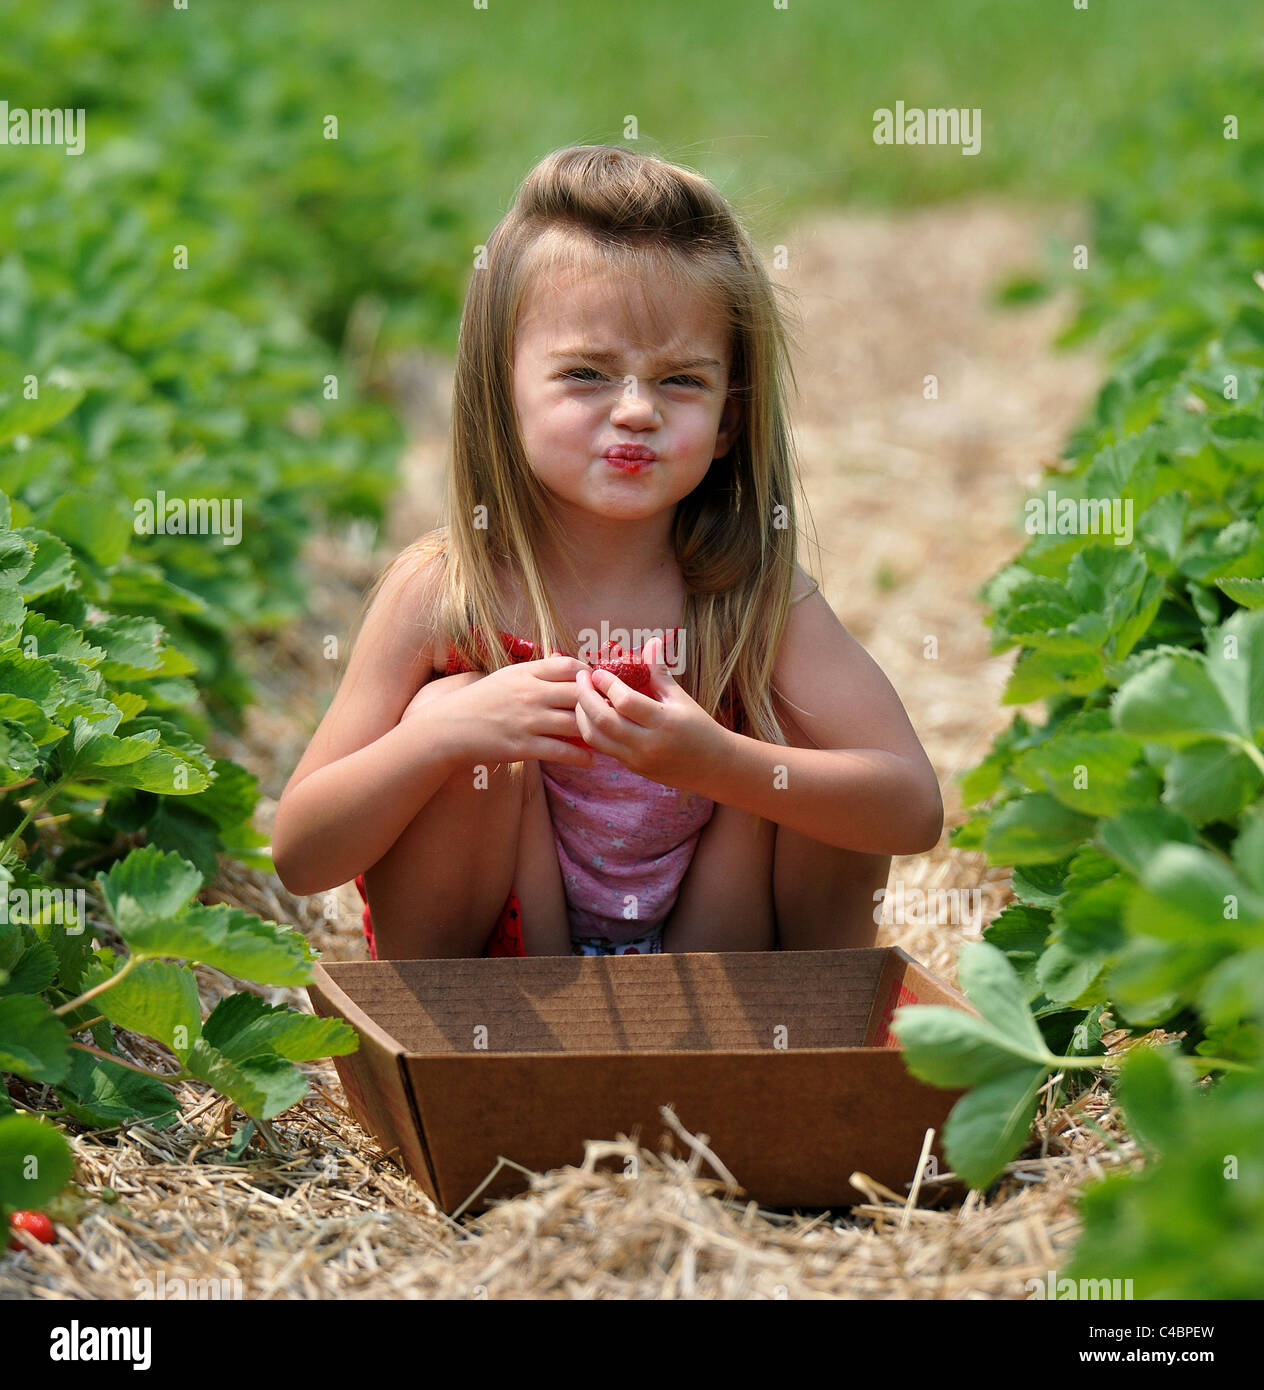 Ein kleines Mädchen macht ein lustiges Gesicht, wie sie eine Beere während einer Erdbeeren pflücken auf einem Bauernhof in CT USA isst Stockfoto